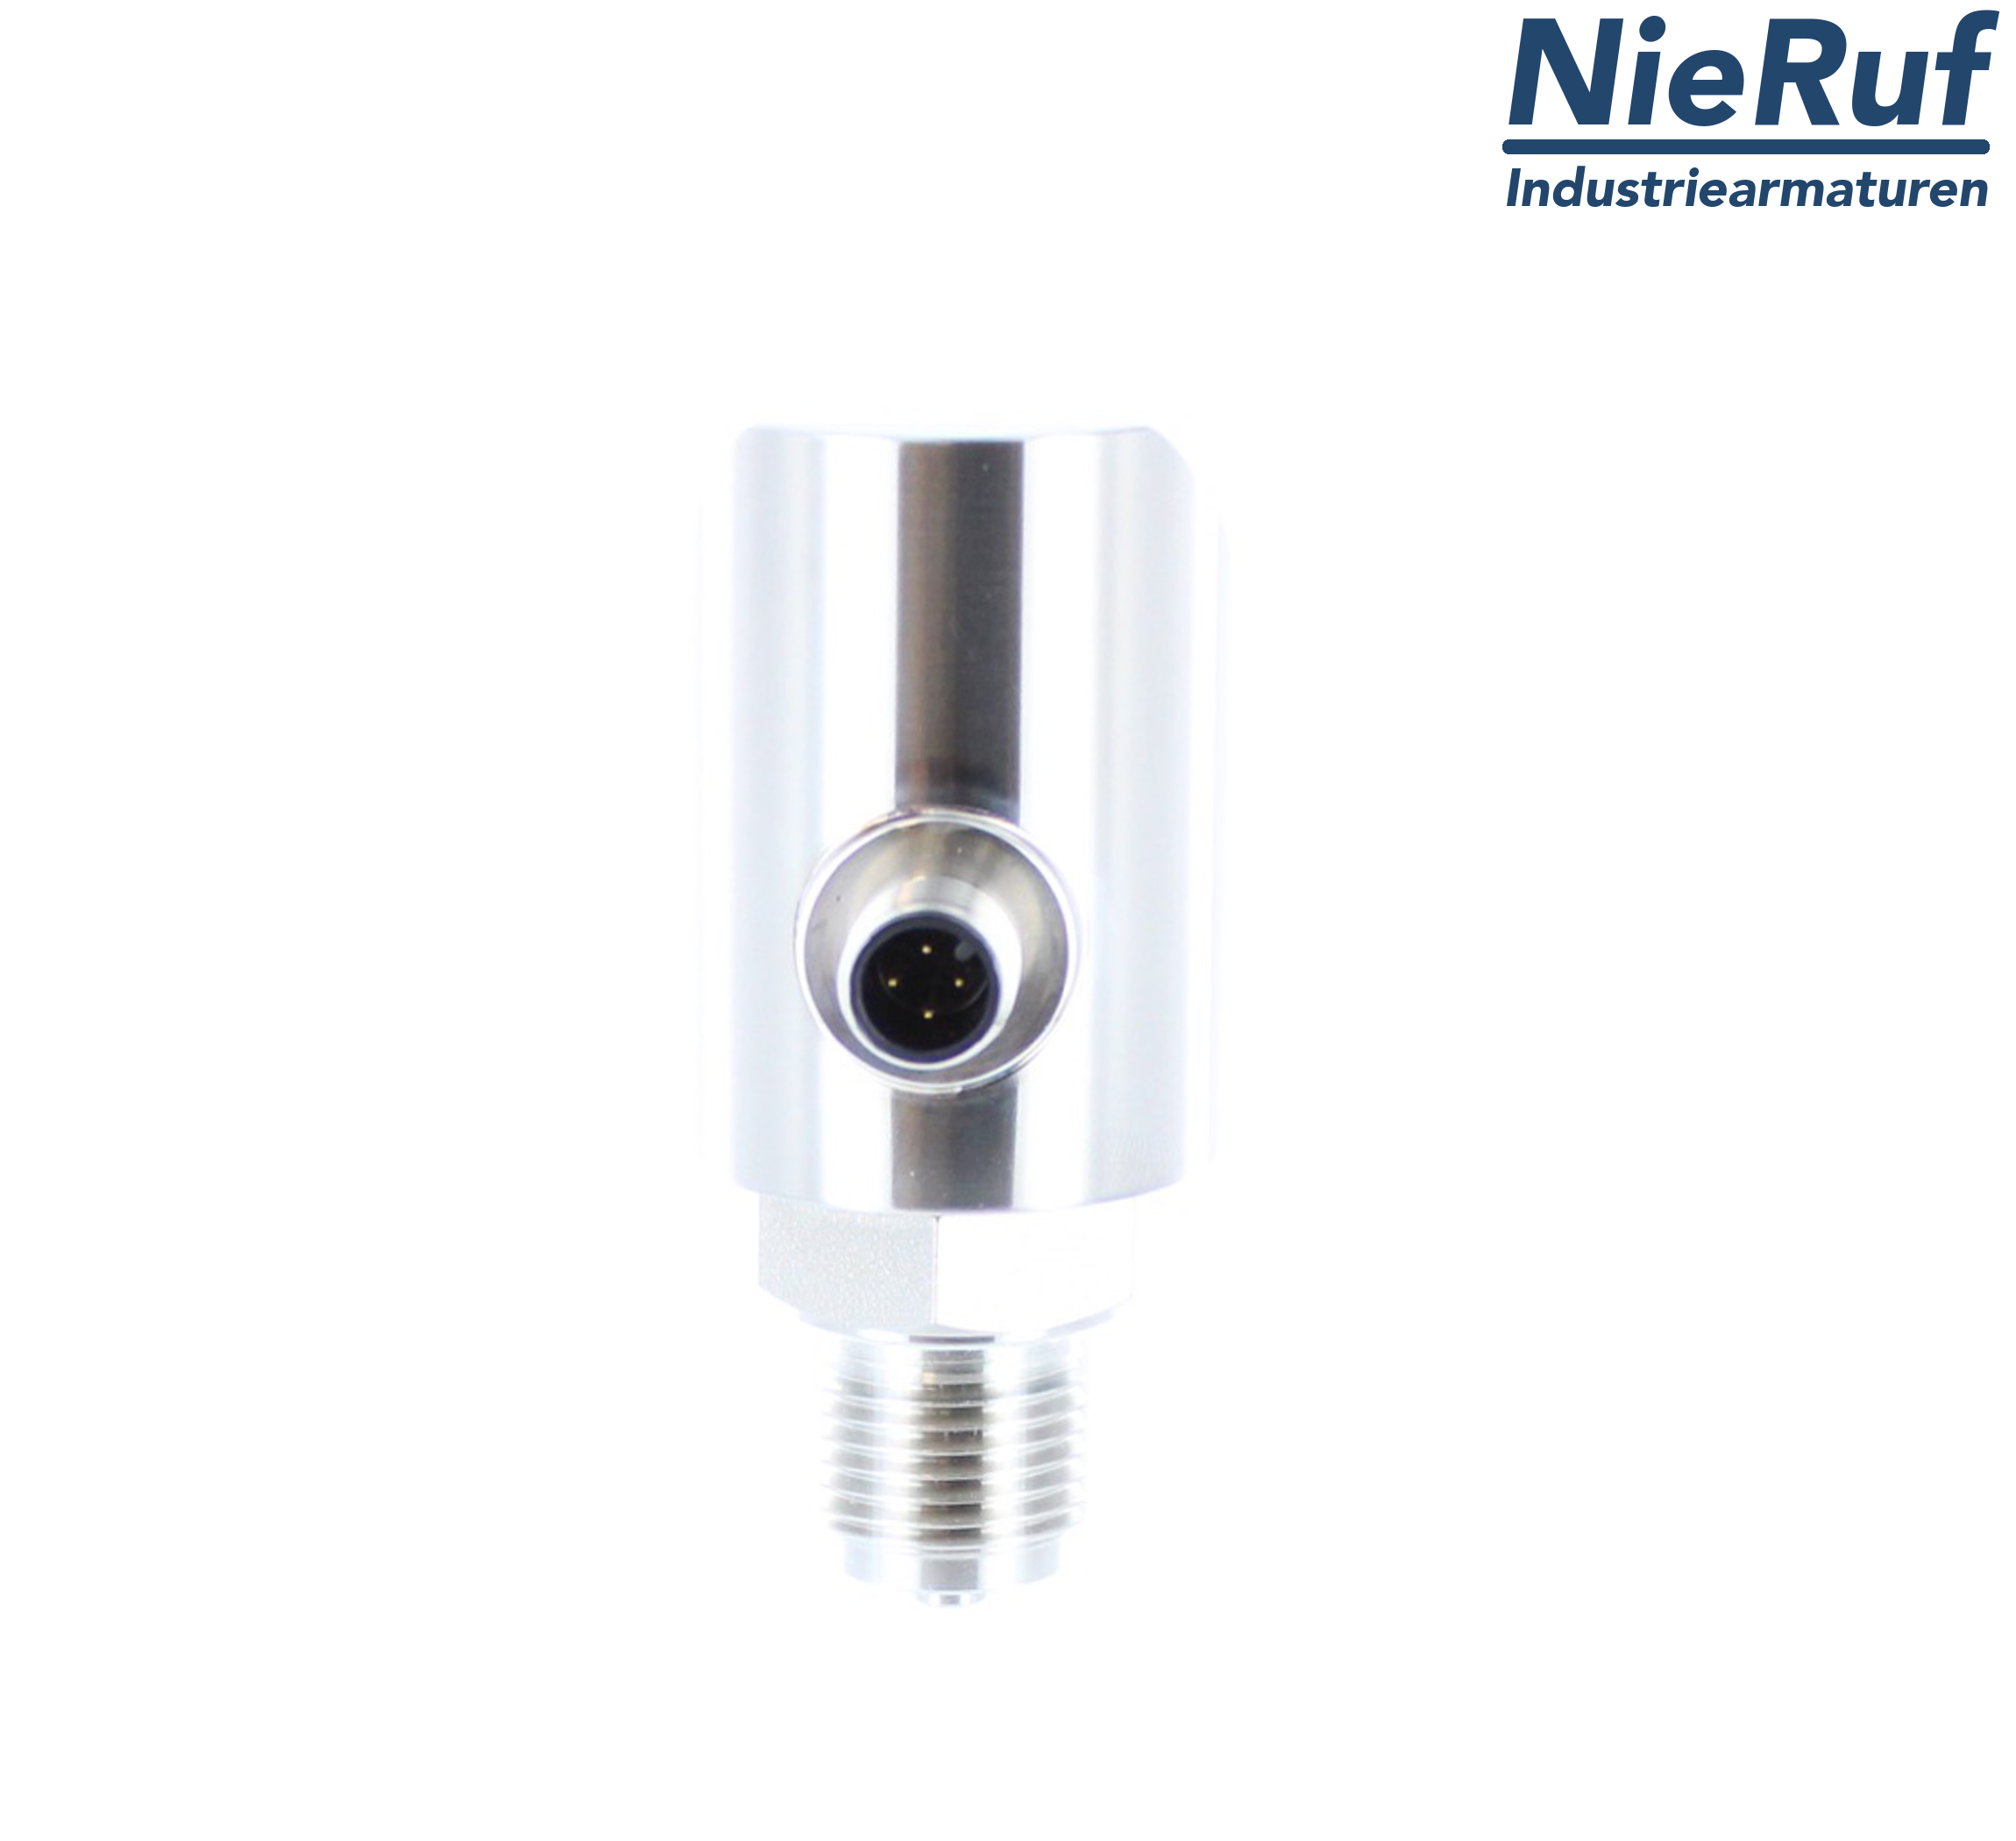 digital pressure sensor G 1/2" B IB 4-wire: 1xPNP, 1x4 - 20mA, Desina FPM 0,0 - 0,40 bar